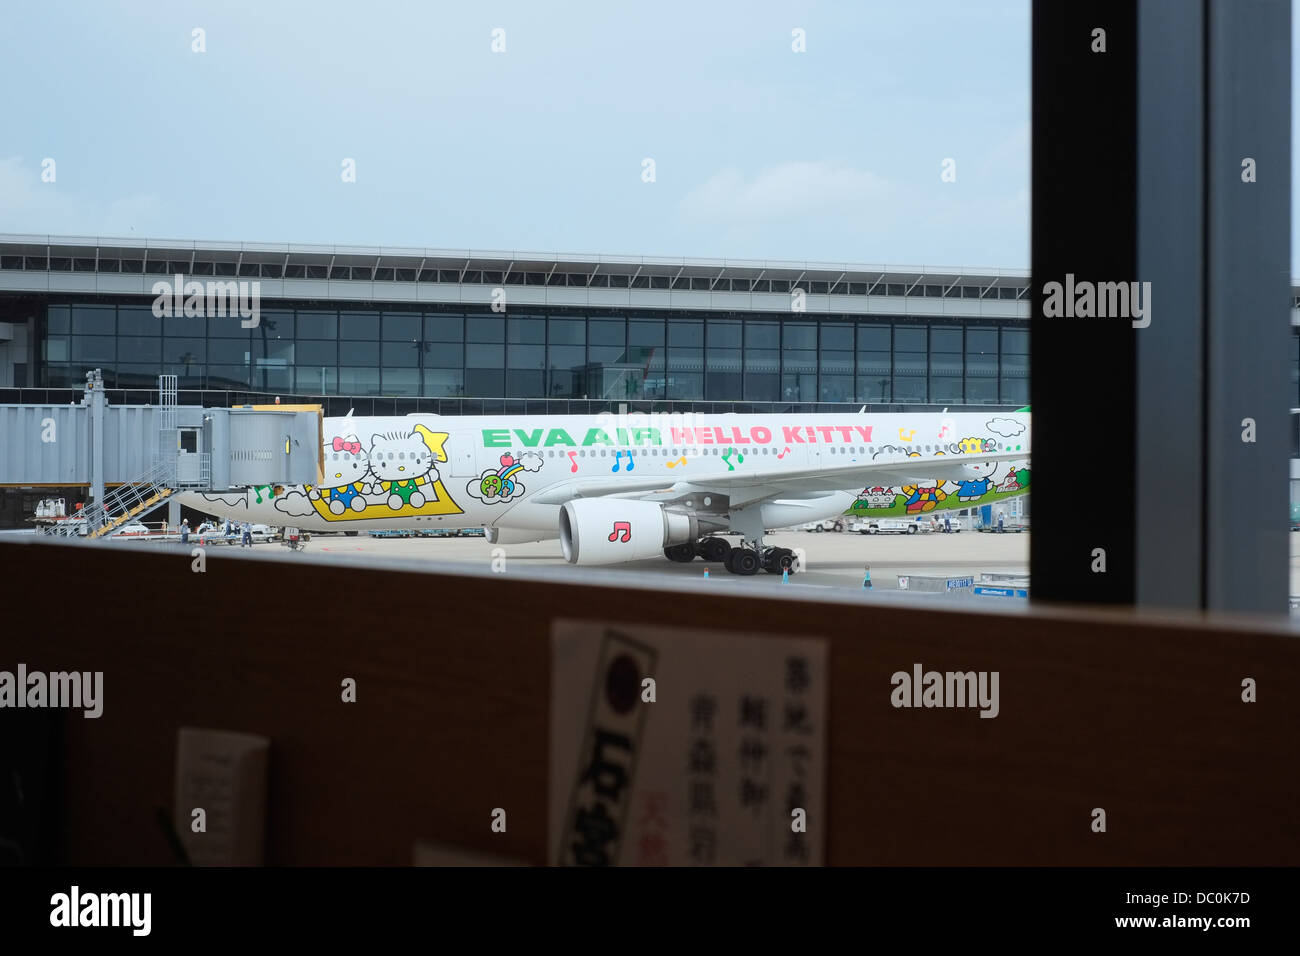 Eva Air Hello Kitty avion à l'aéroport Narita de Tokyo. Banque D'Images